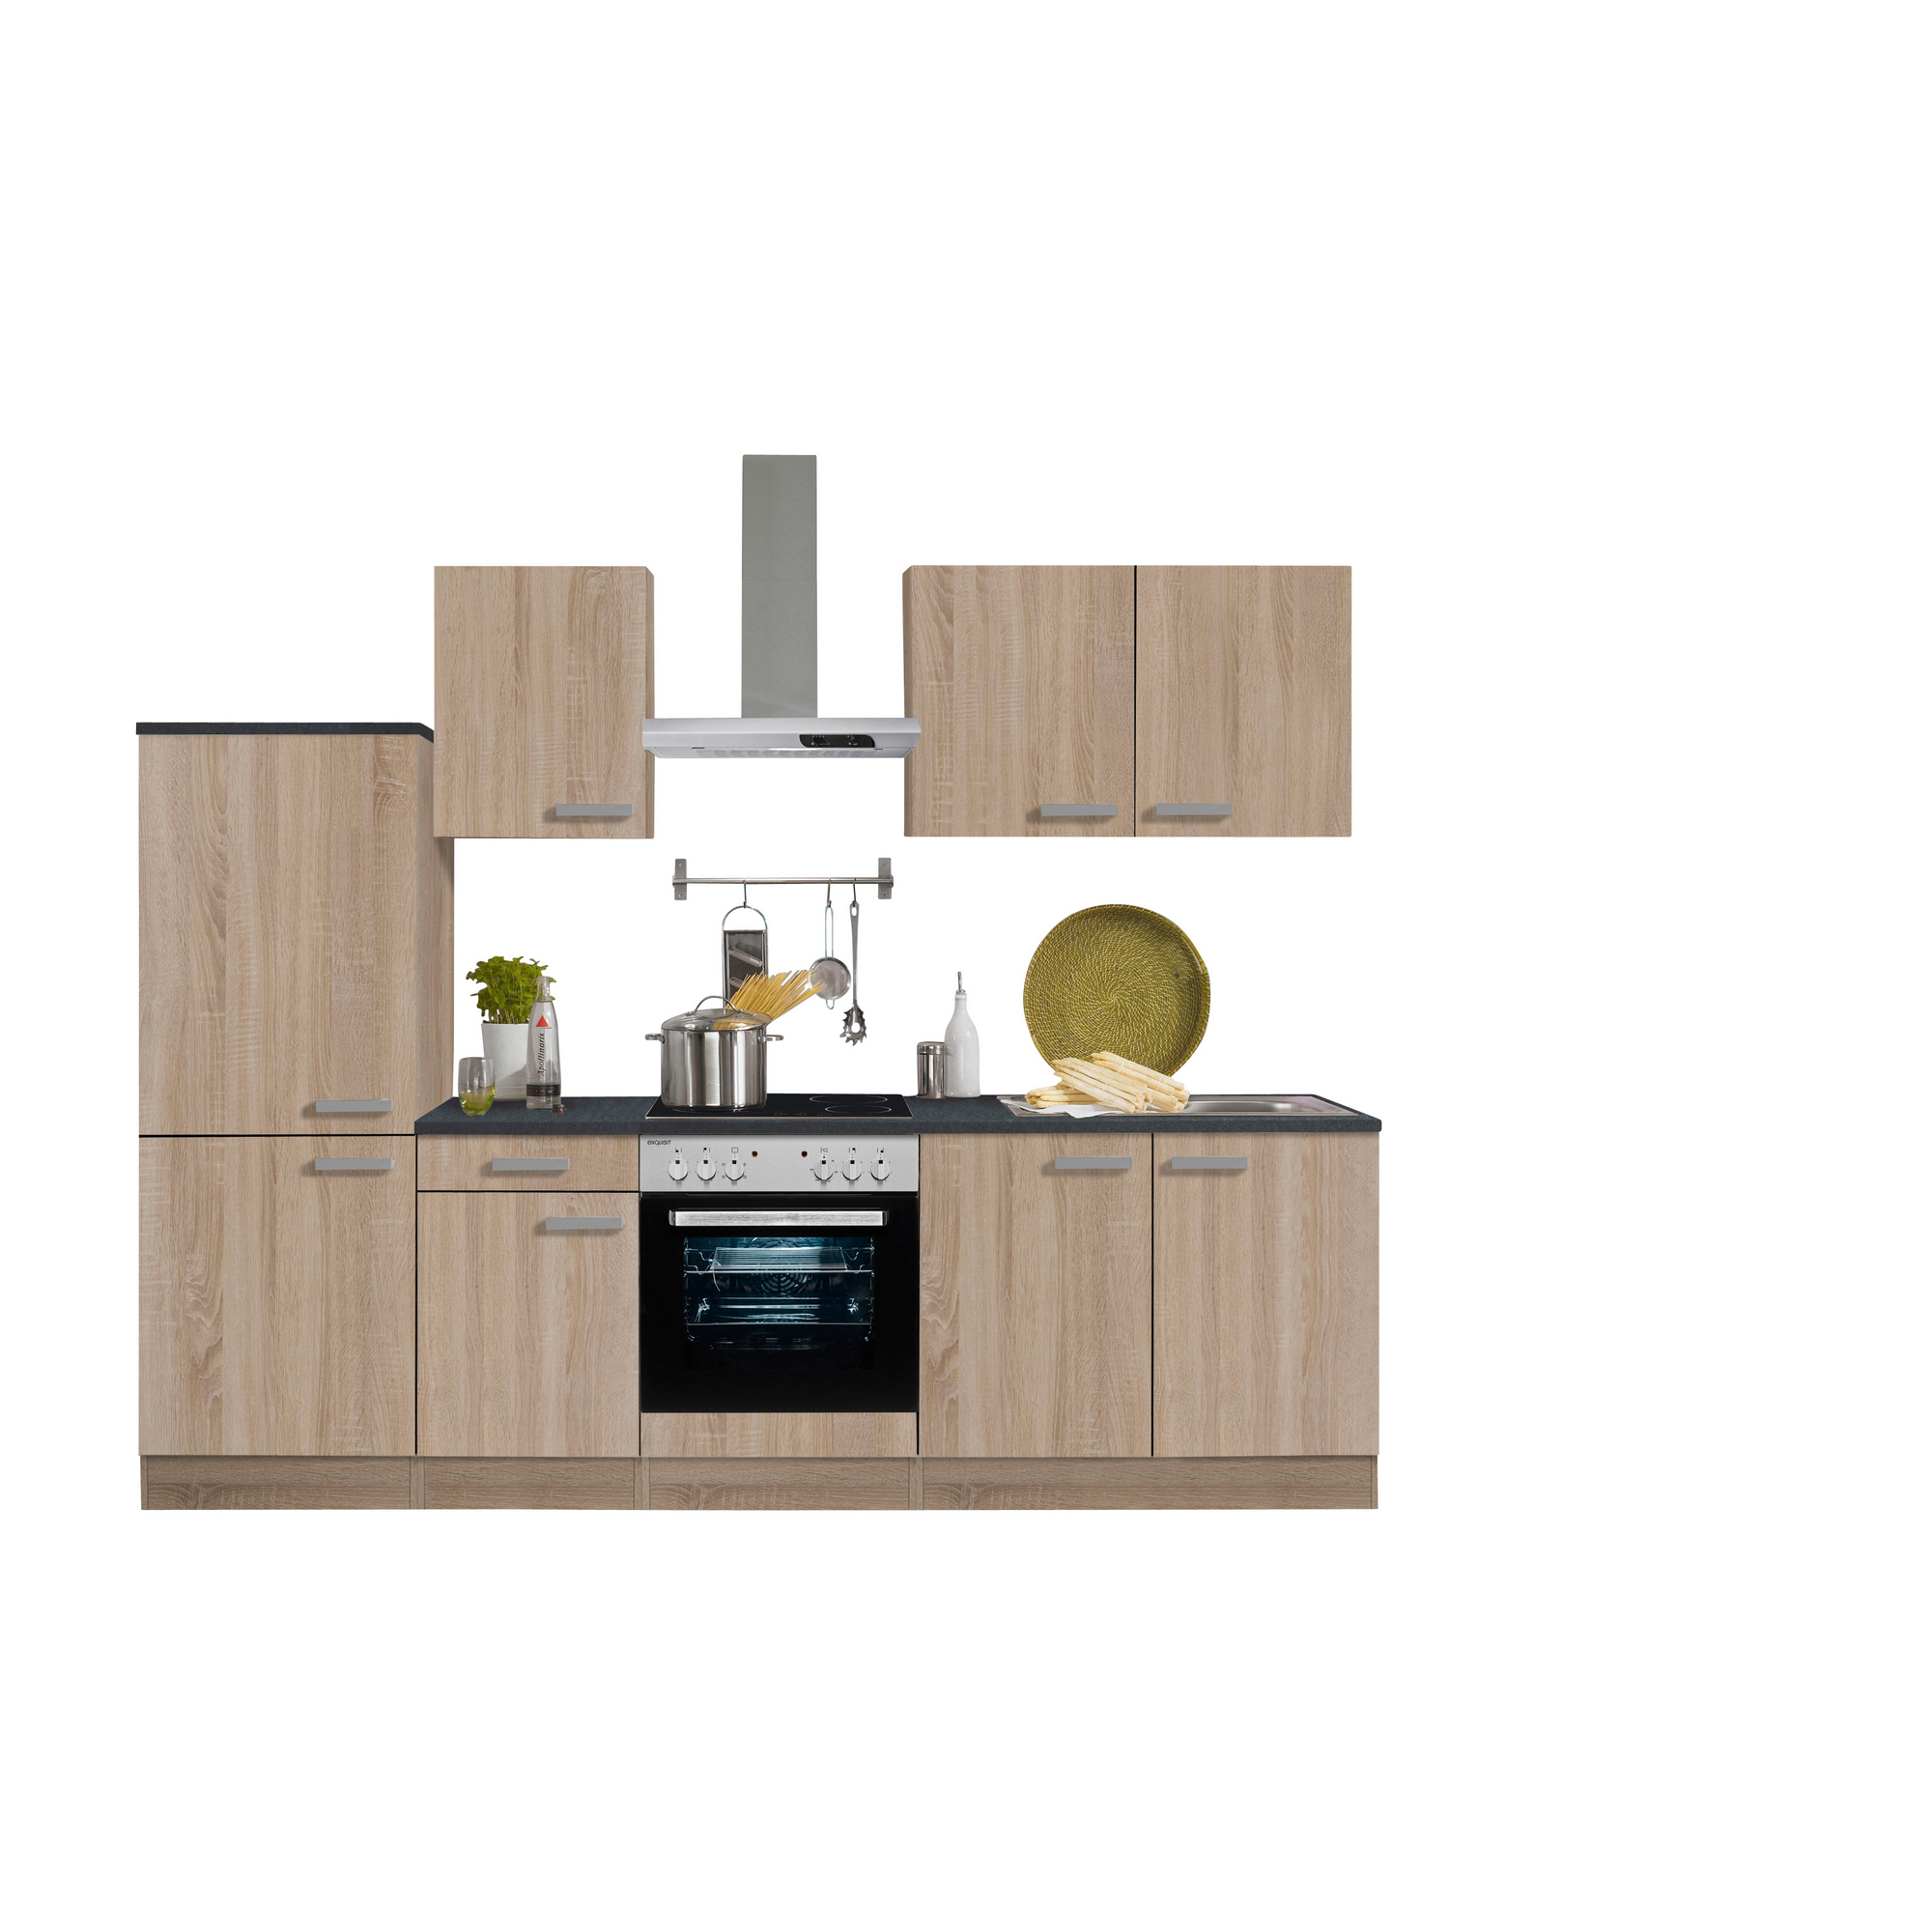 Küchenzeile mit E-Geräten 'OPTIkompakt Monza' eichefarben/anthrazit 270 cm + product picture